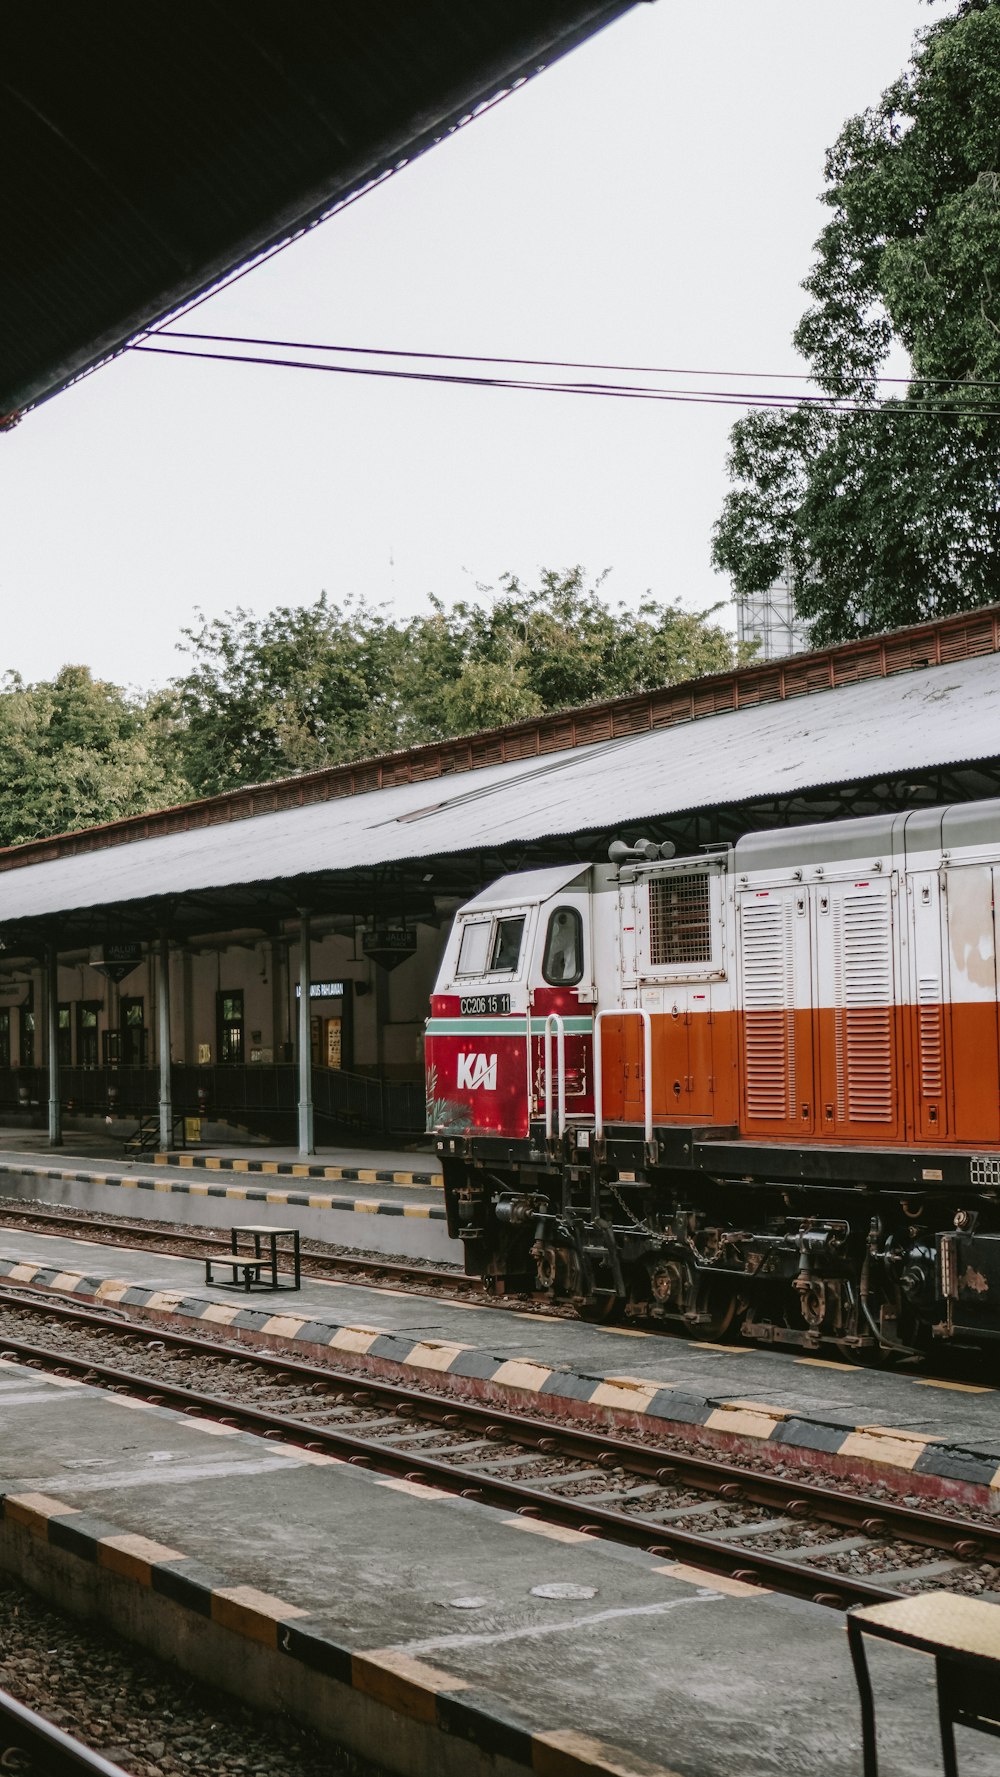 Un tren rojo y blanco entrando en una estación de tren